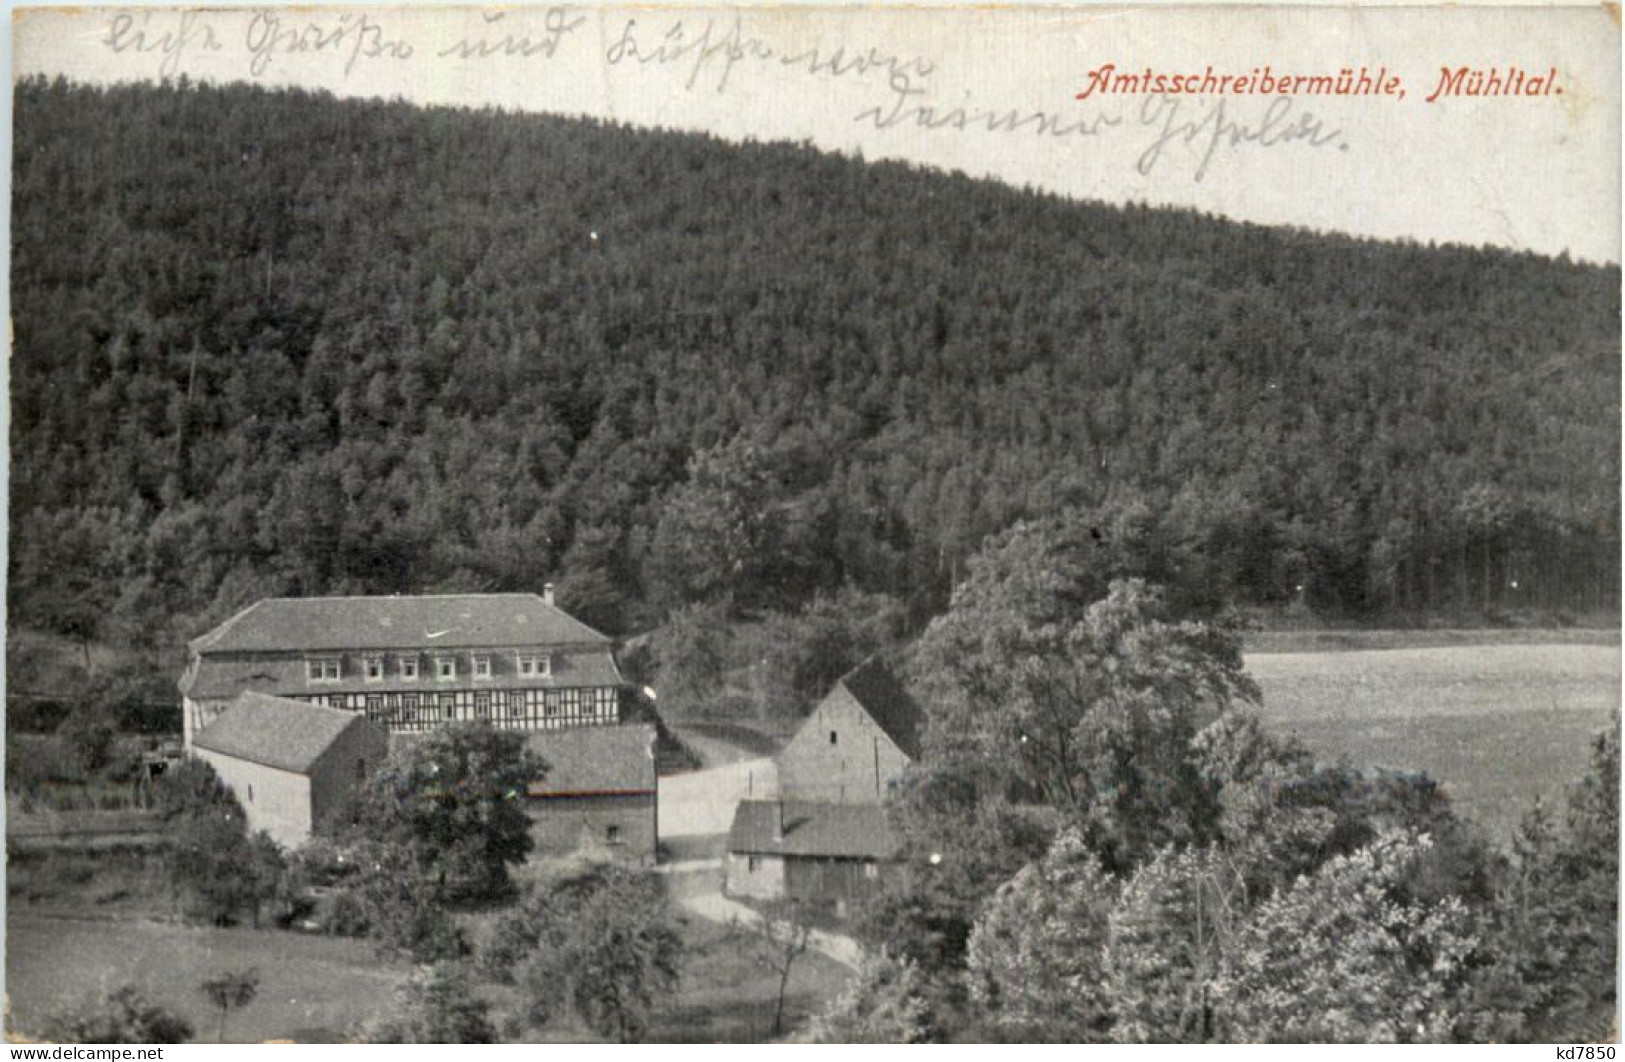 Amtsschreibermühle, Mühltal - Eisenberg